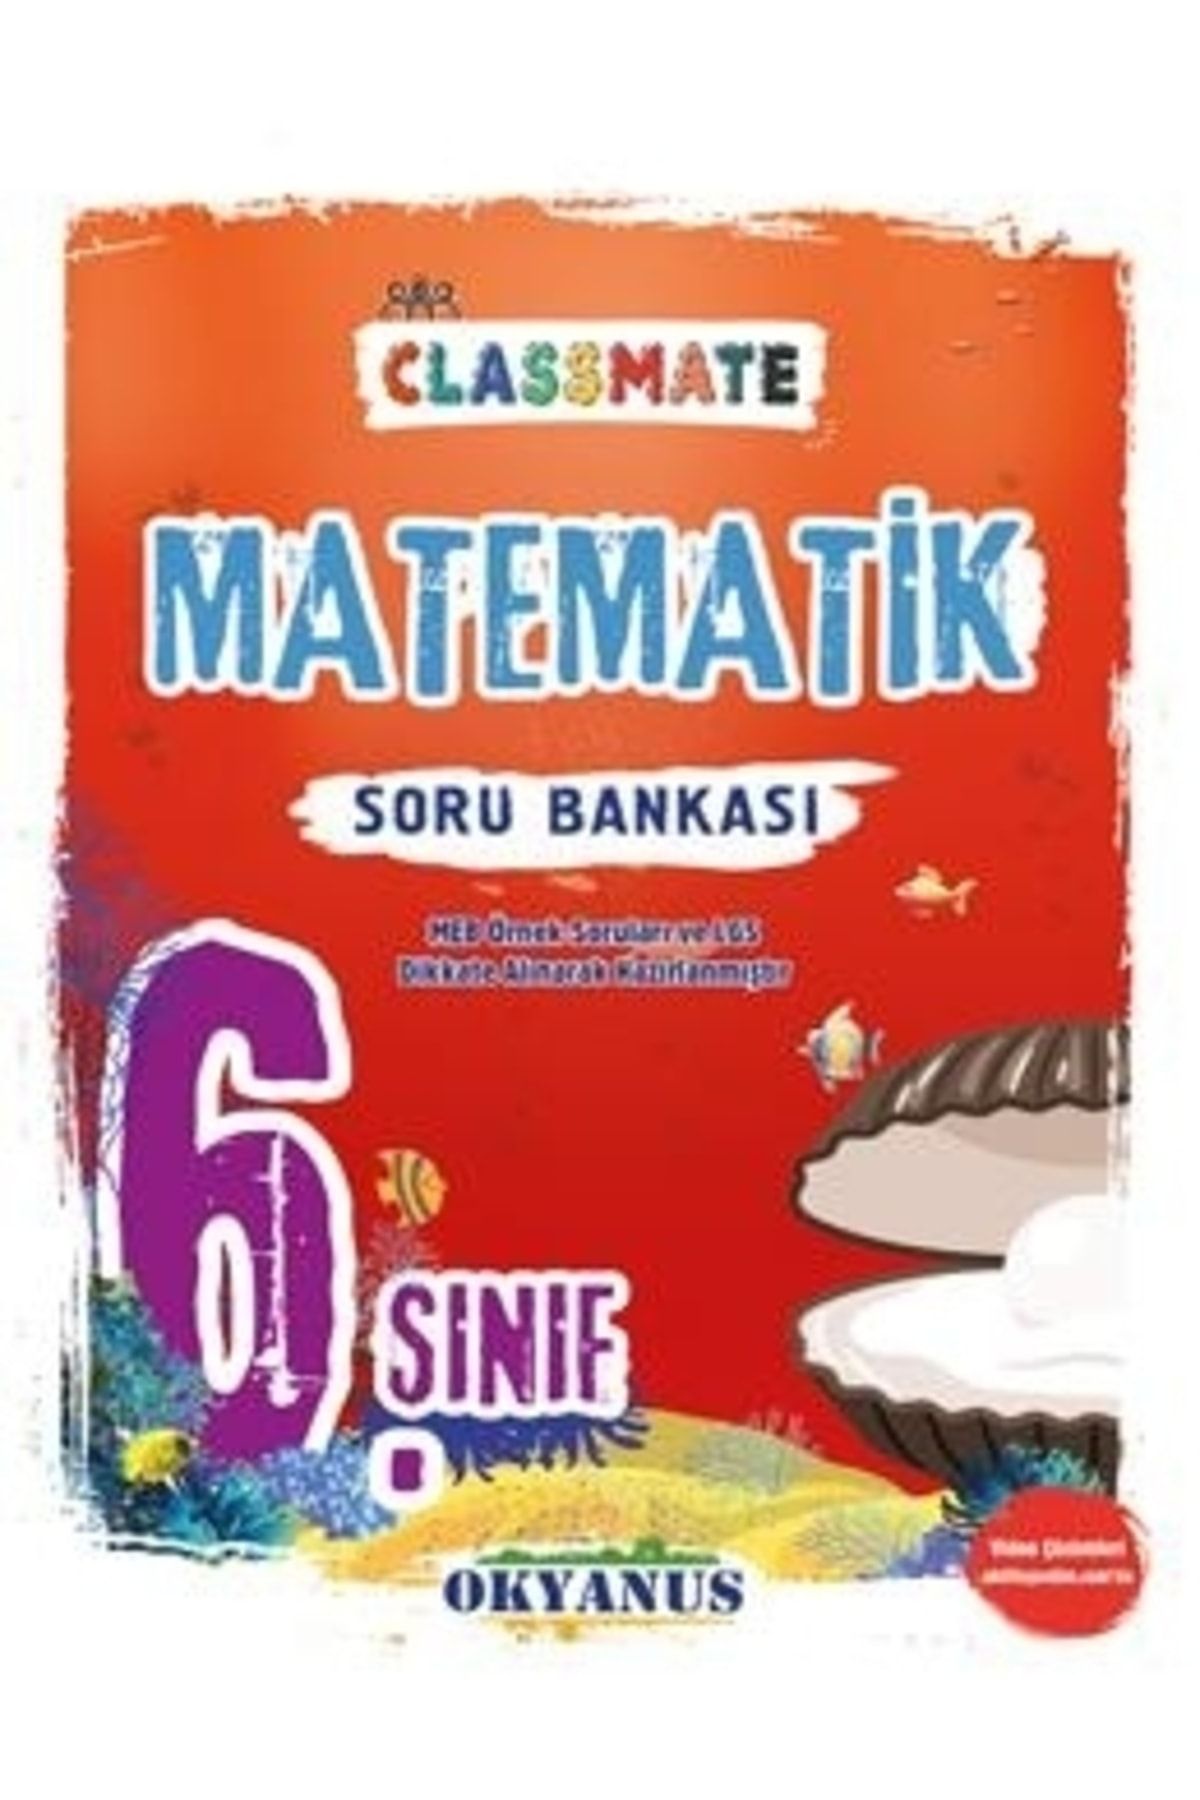 6. Sınıf Classmate Matematik Soru Bankası